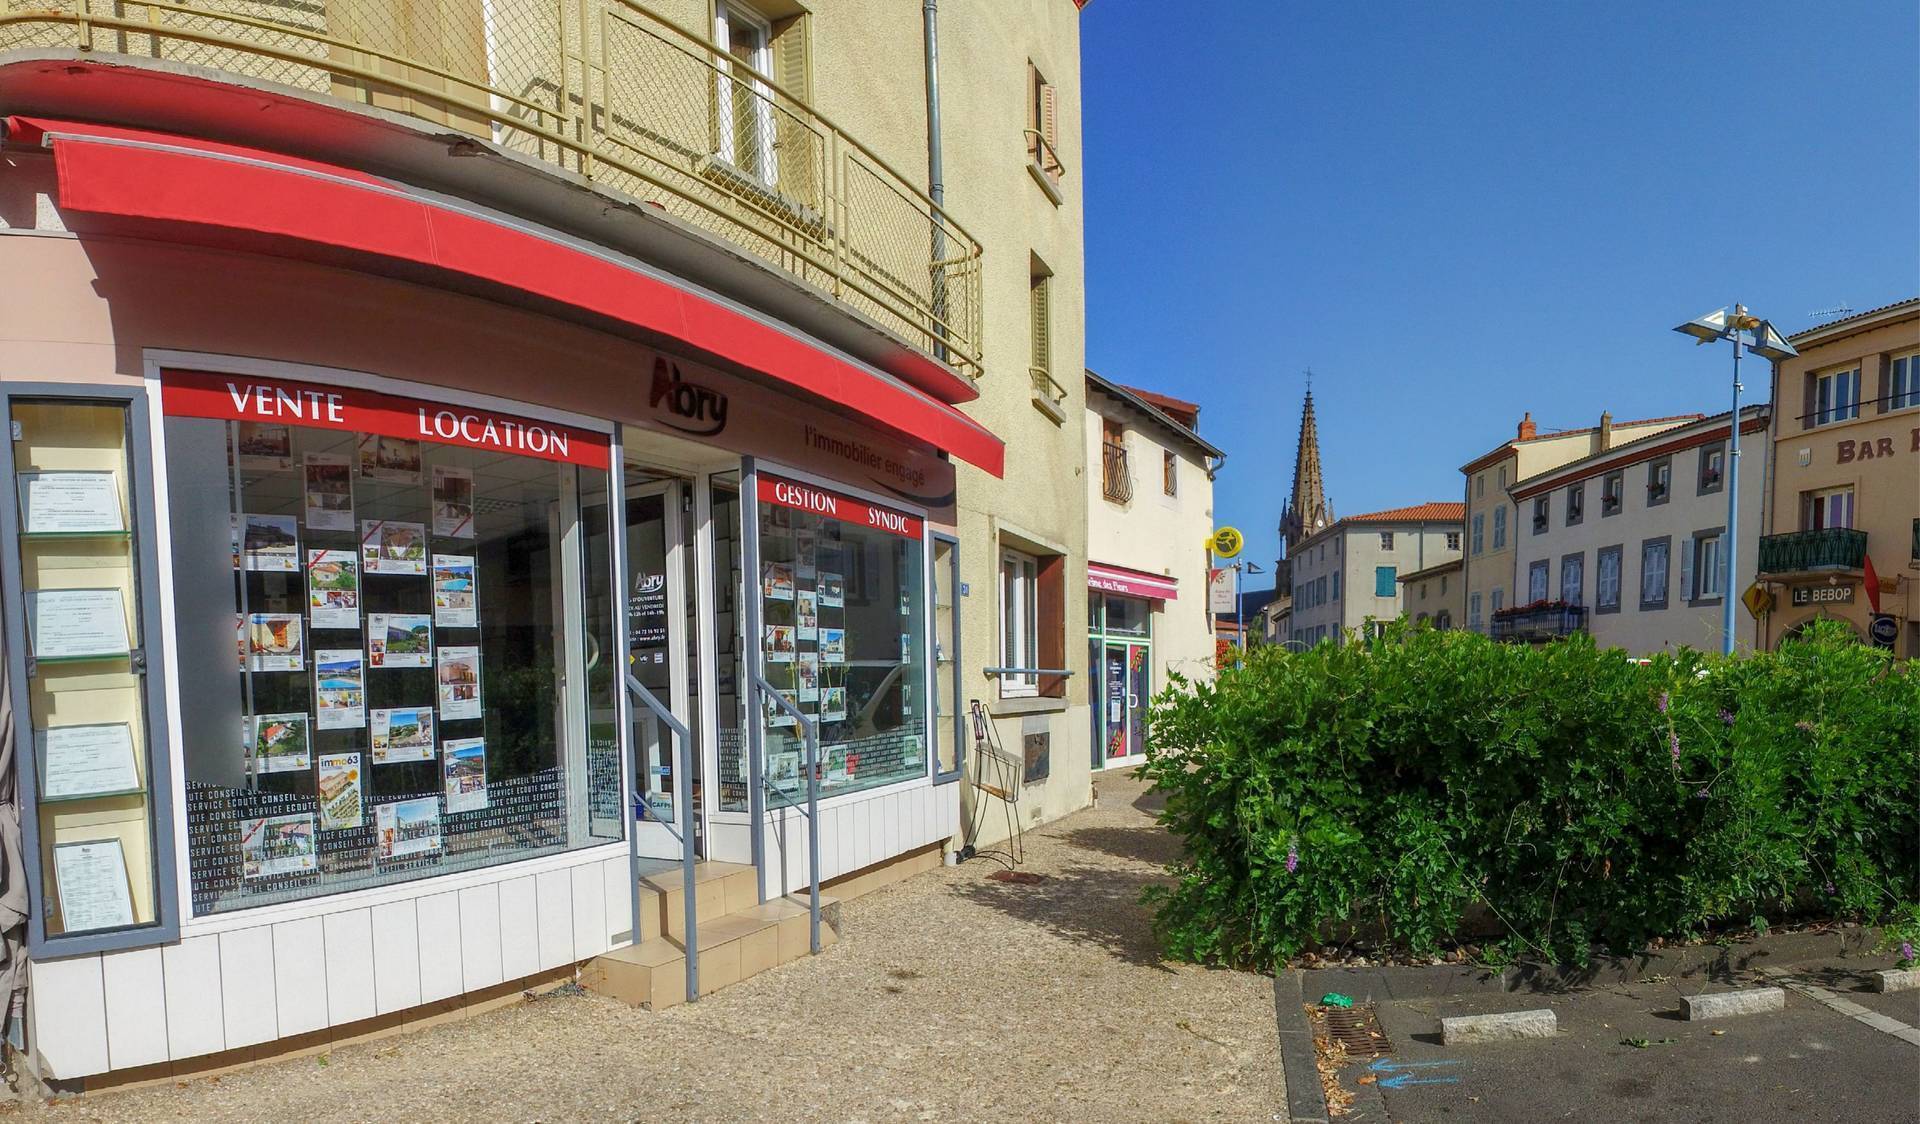 Saint-Amant-Tallende (63450) - ABRY Immobilier Saint-Amant-Tallende